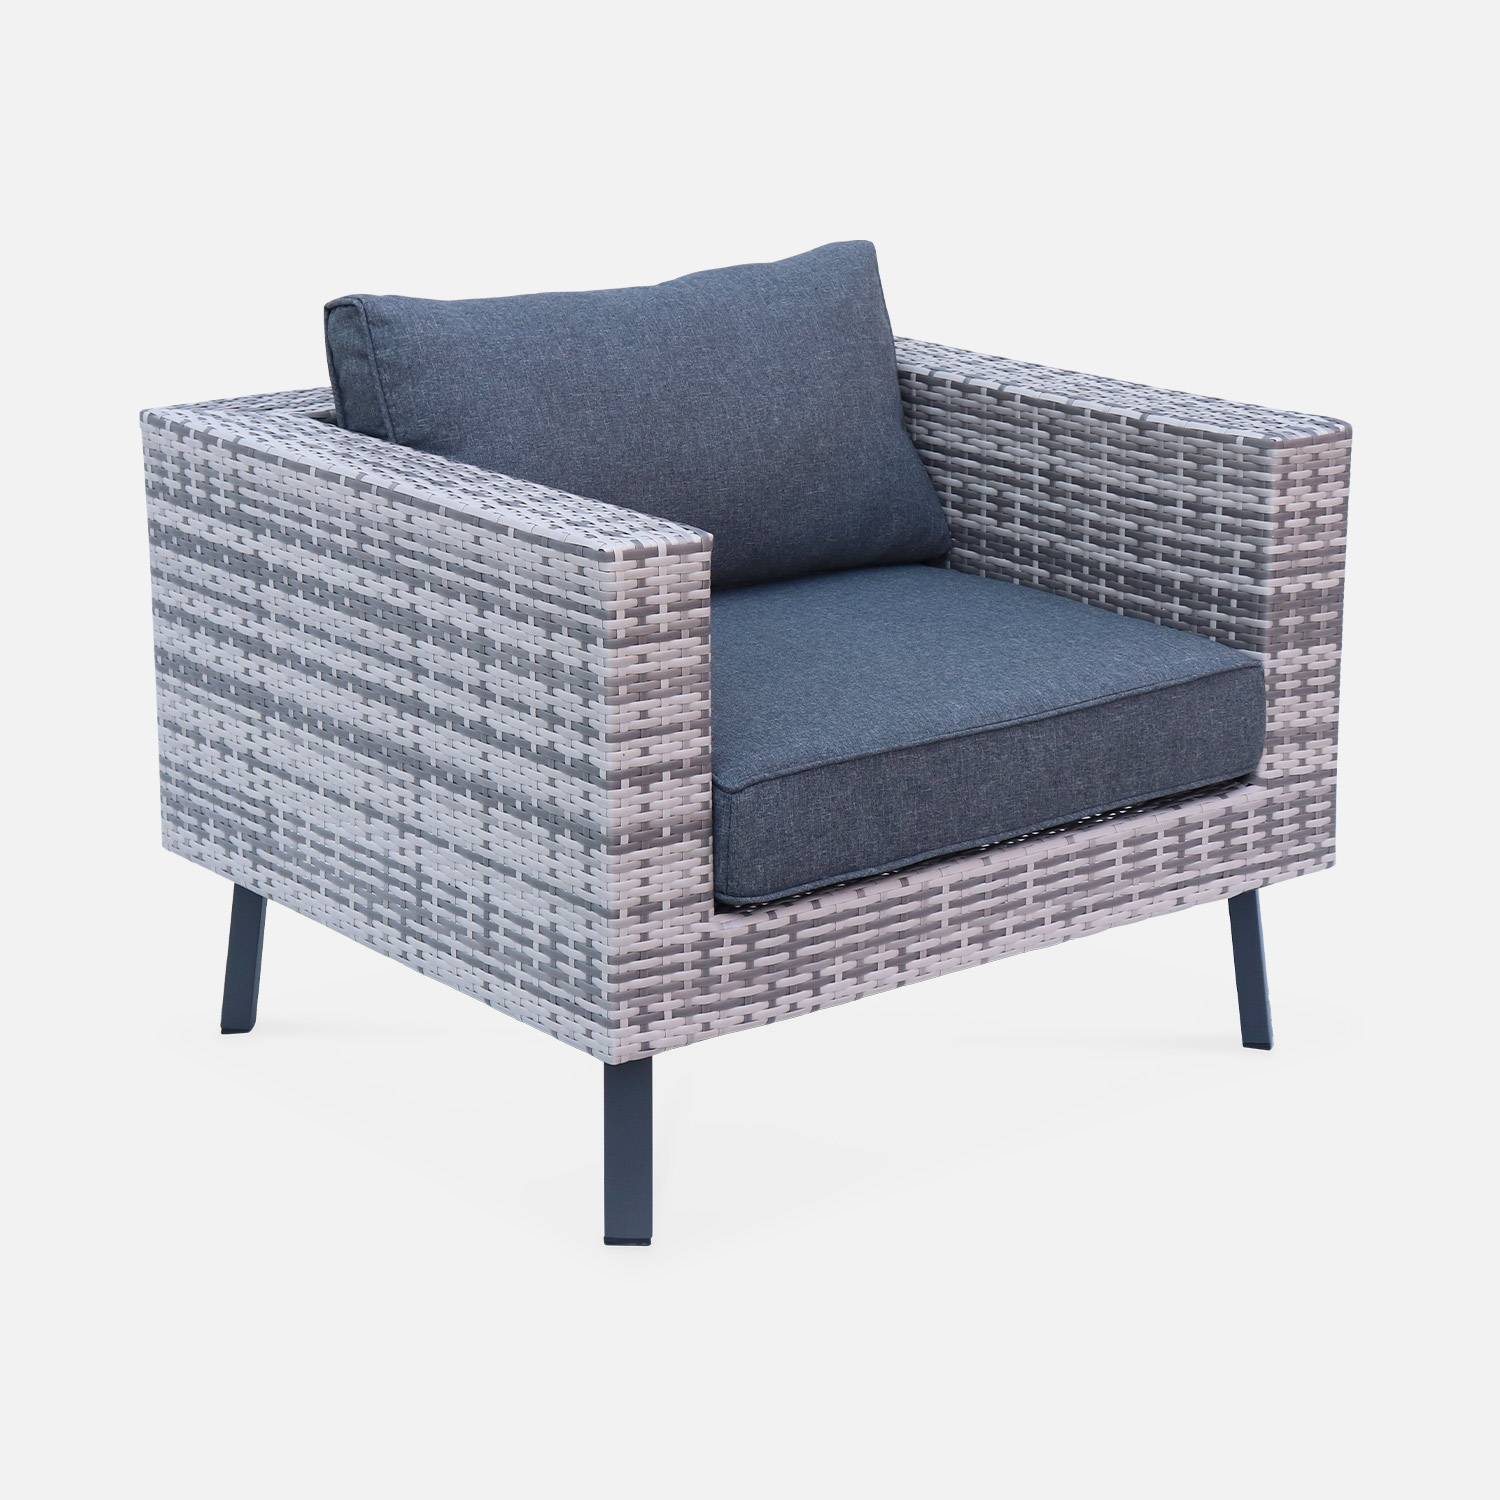 Loungeset 5 zitplaatsen in plat wicker, gemixt grijs wicker en donkergrijze kussens Photo3